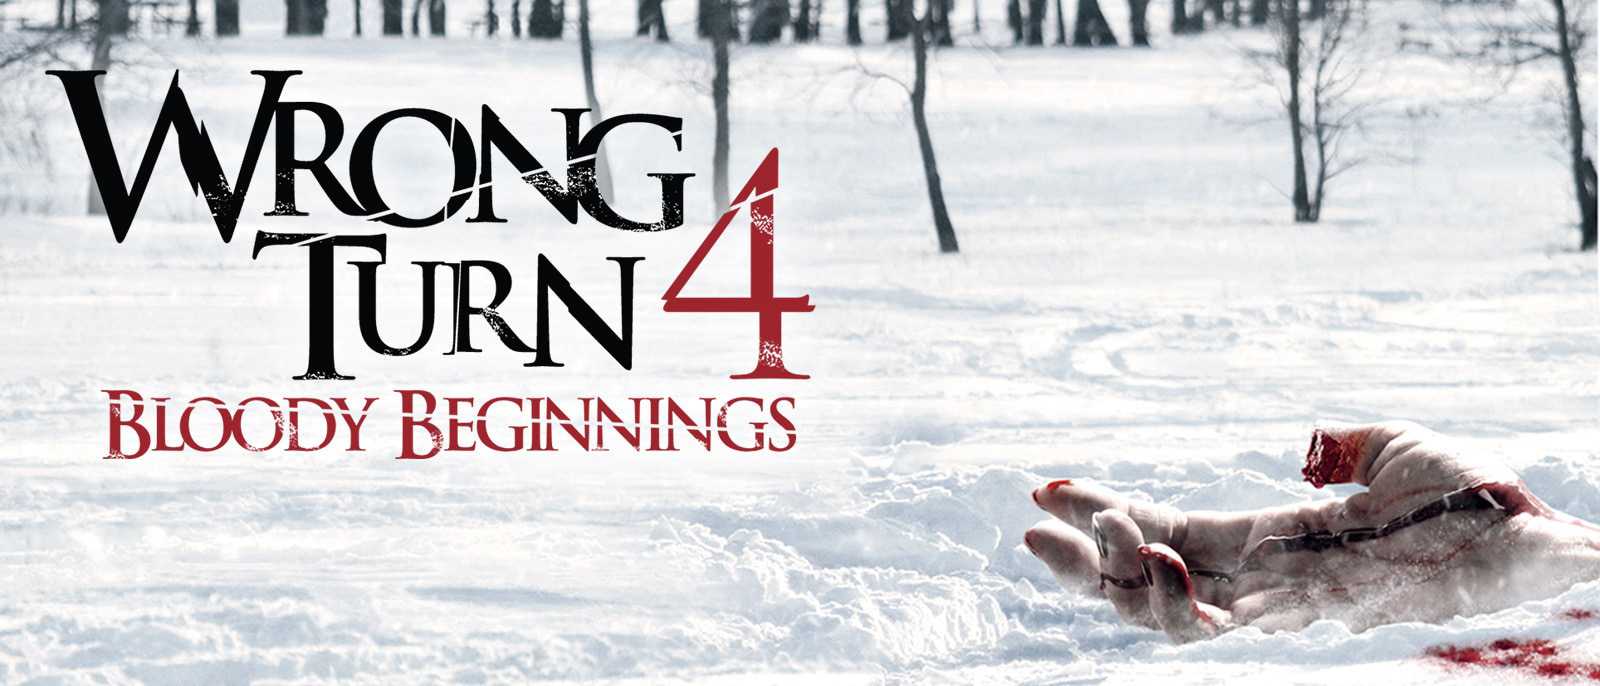 Ngã Rẽ Tử Thần 4: Cuộc Đẫm Máu Bắt Đầu - Wrong Turn 4: Bloody Beginnings